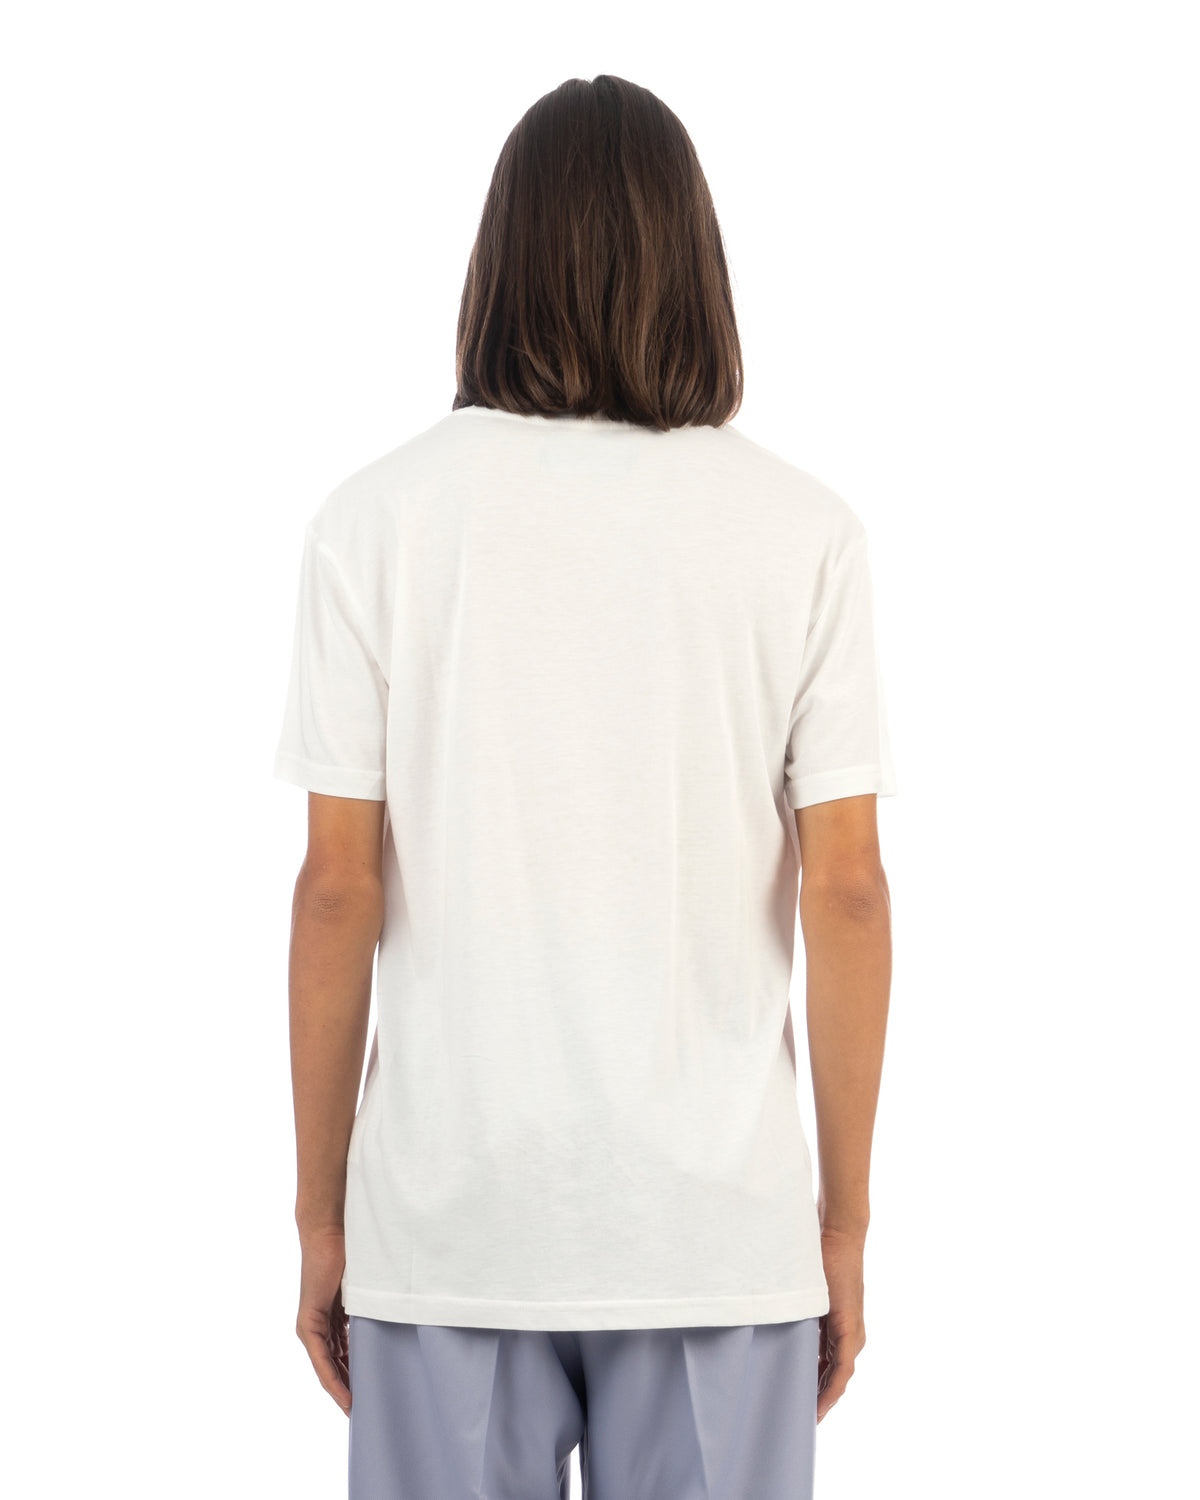 VIKTOR&ROLF | Logo T-Shirt White - Concrete